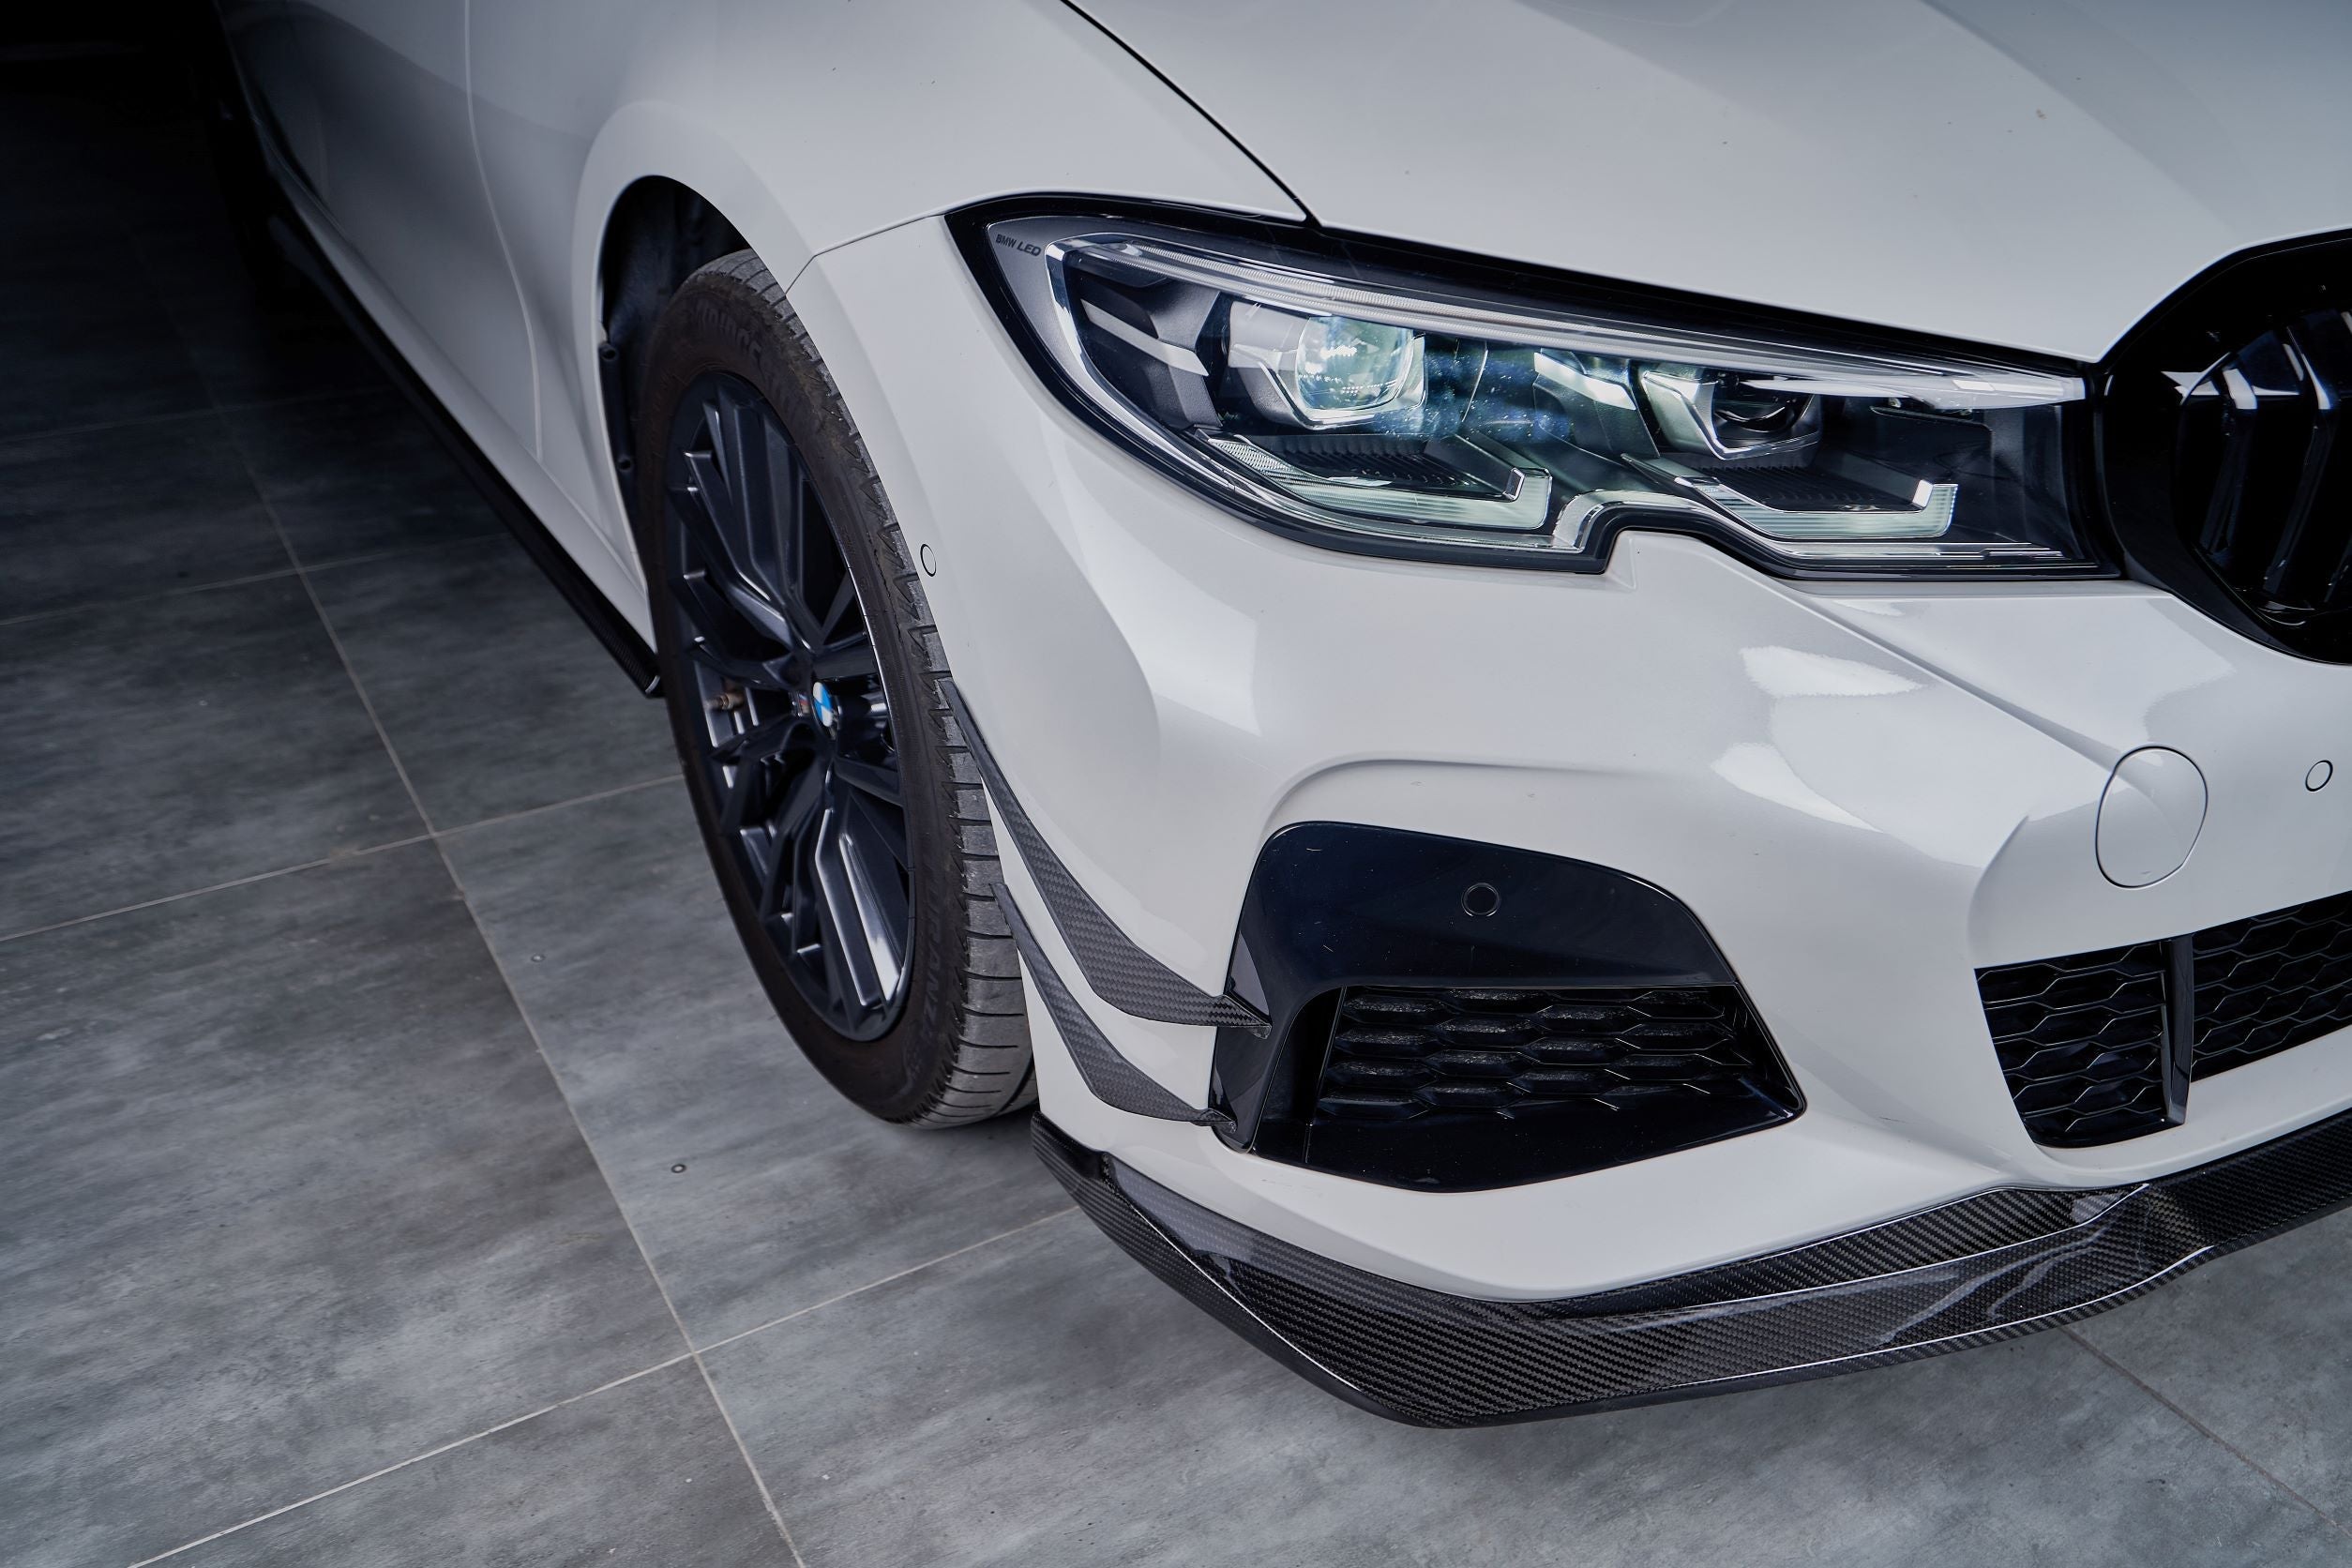 Karbel Carbon Dry Carbon Fiber Front Lip for BMW 3 Series G20 2019-ON